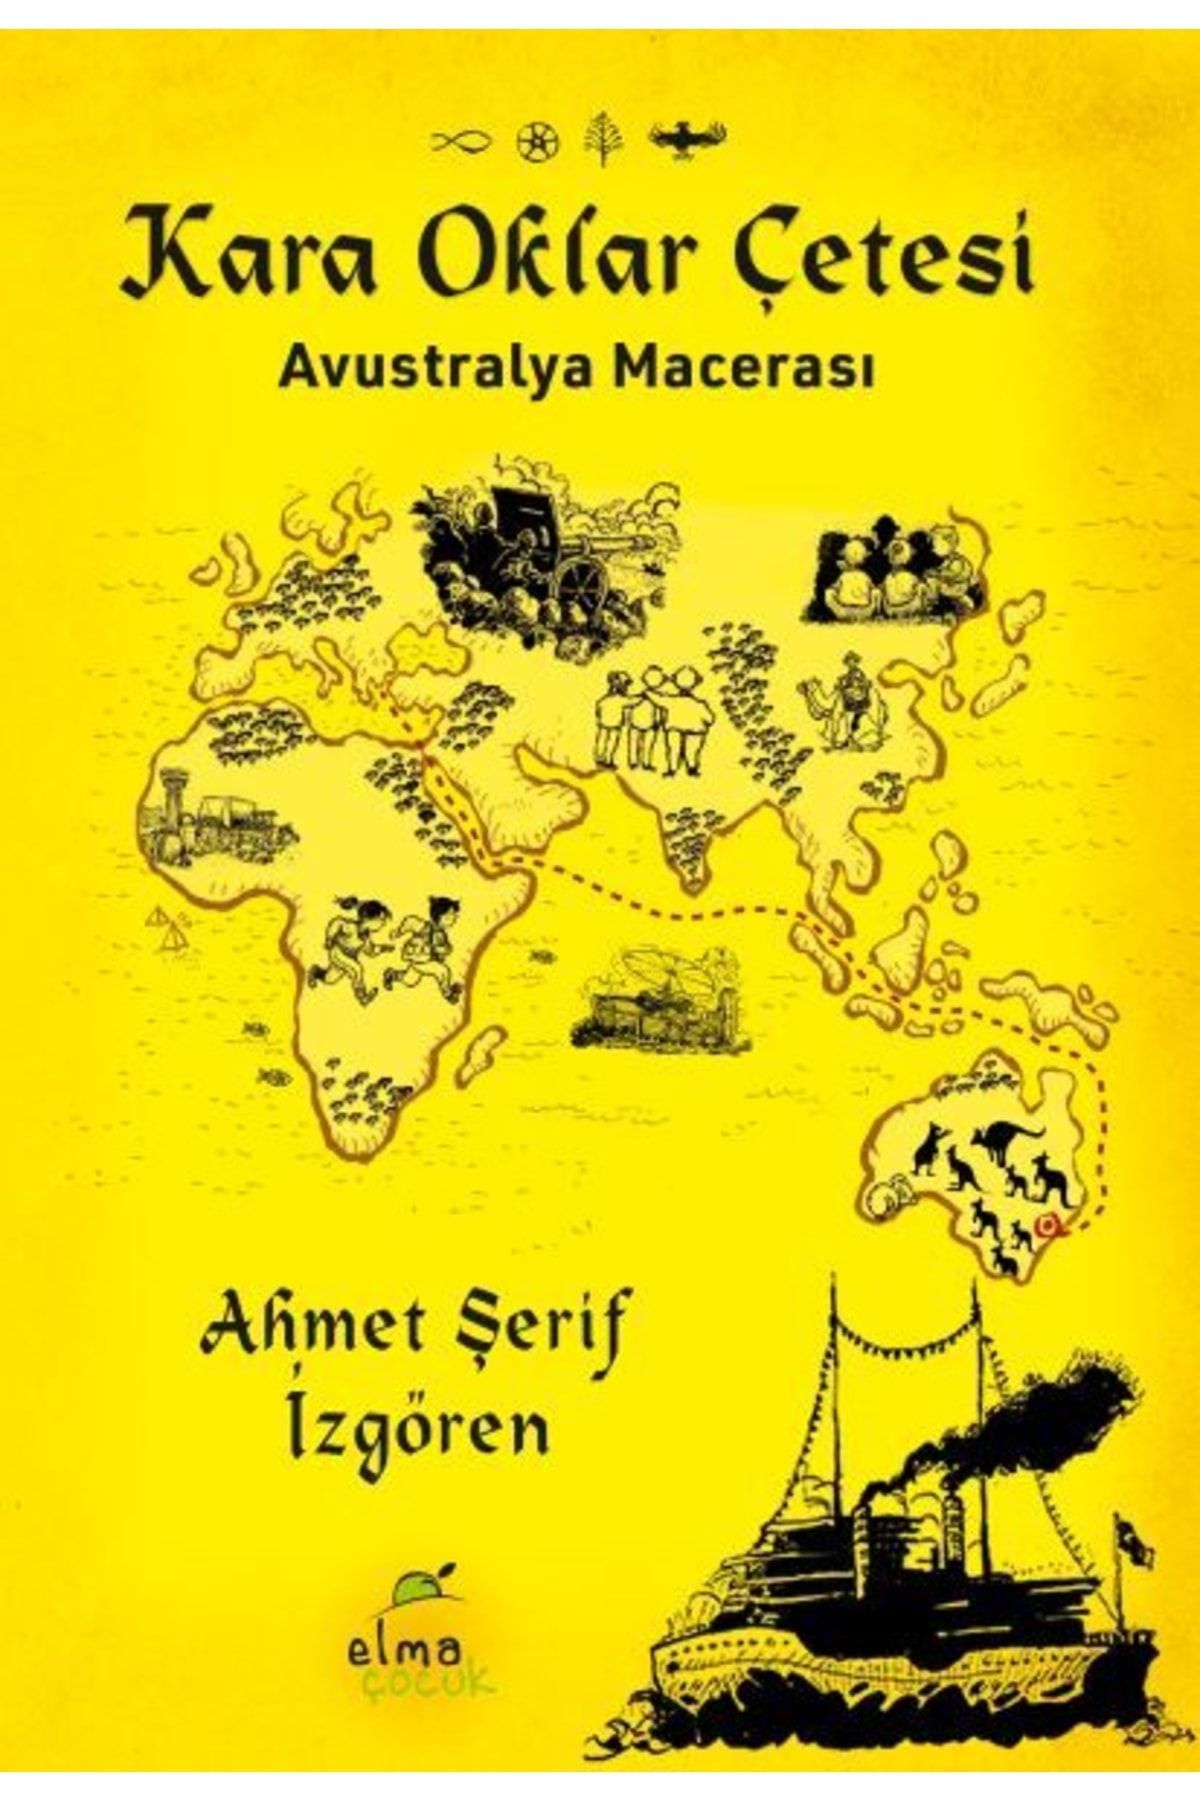 ELMA Yayınevi Kara Oklar Çetesi-avustralya Macerası